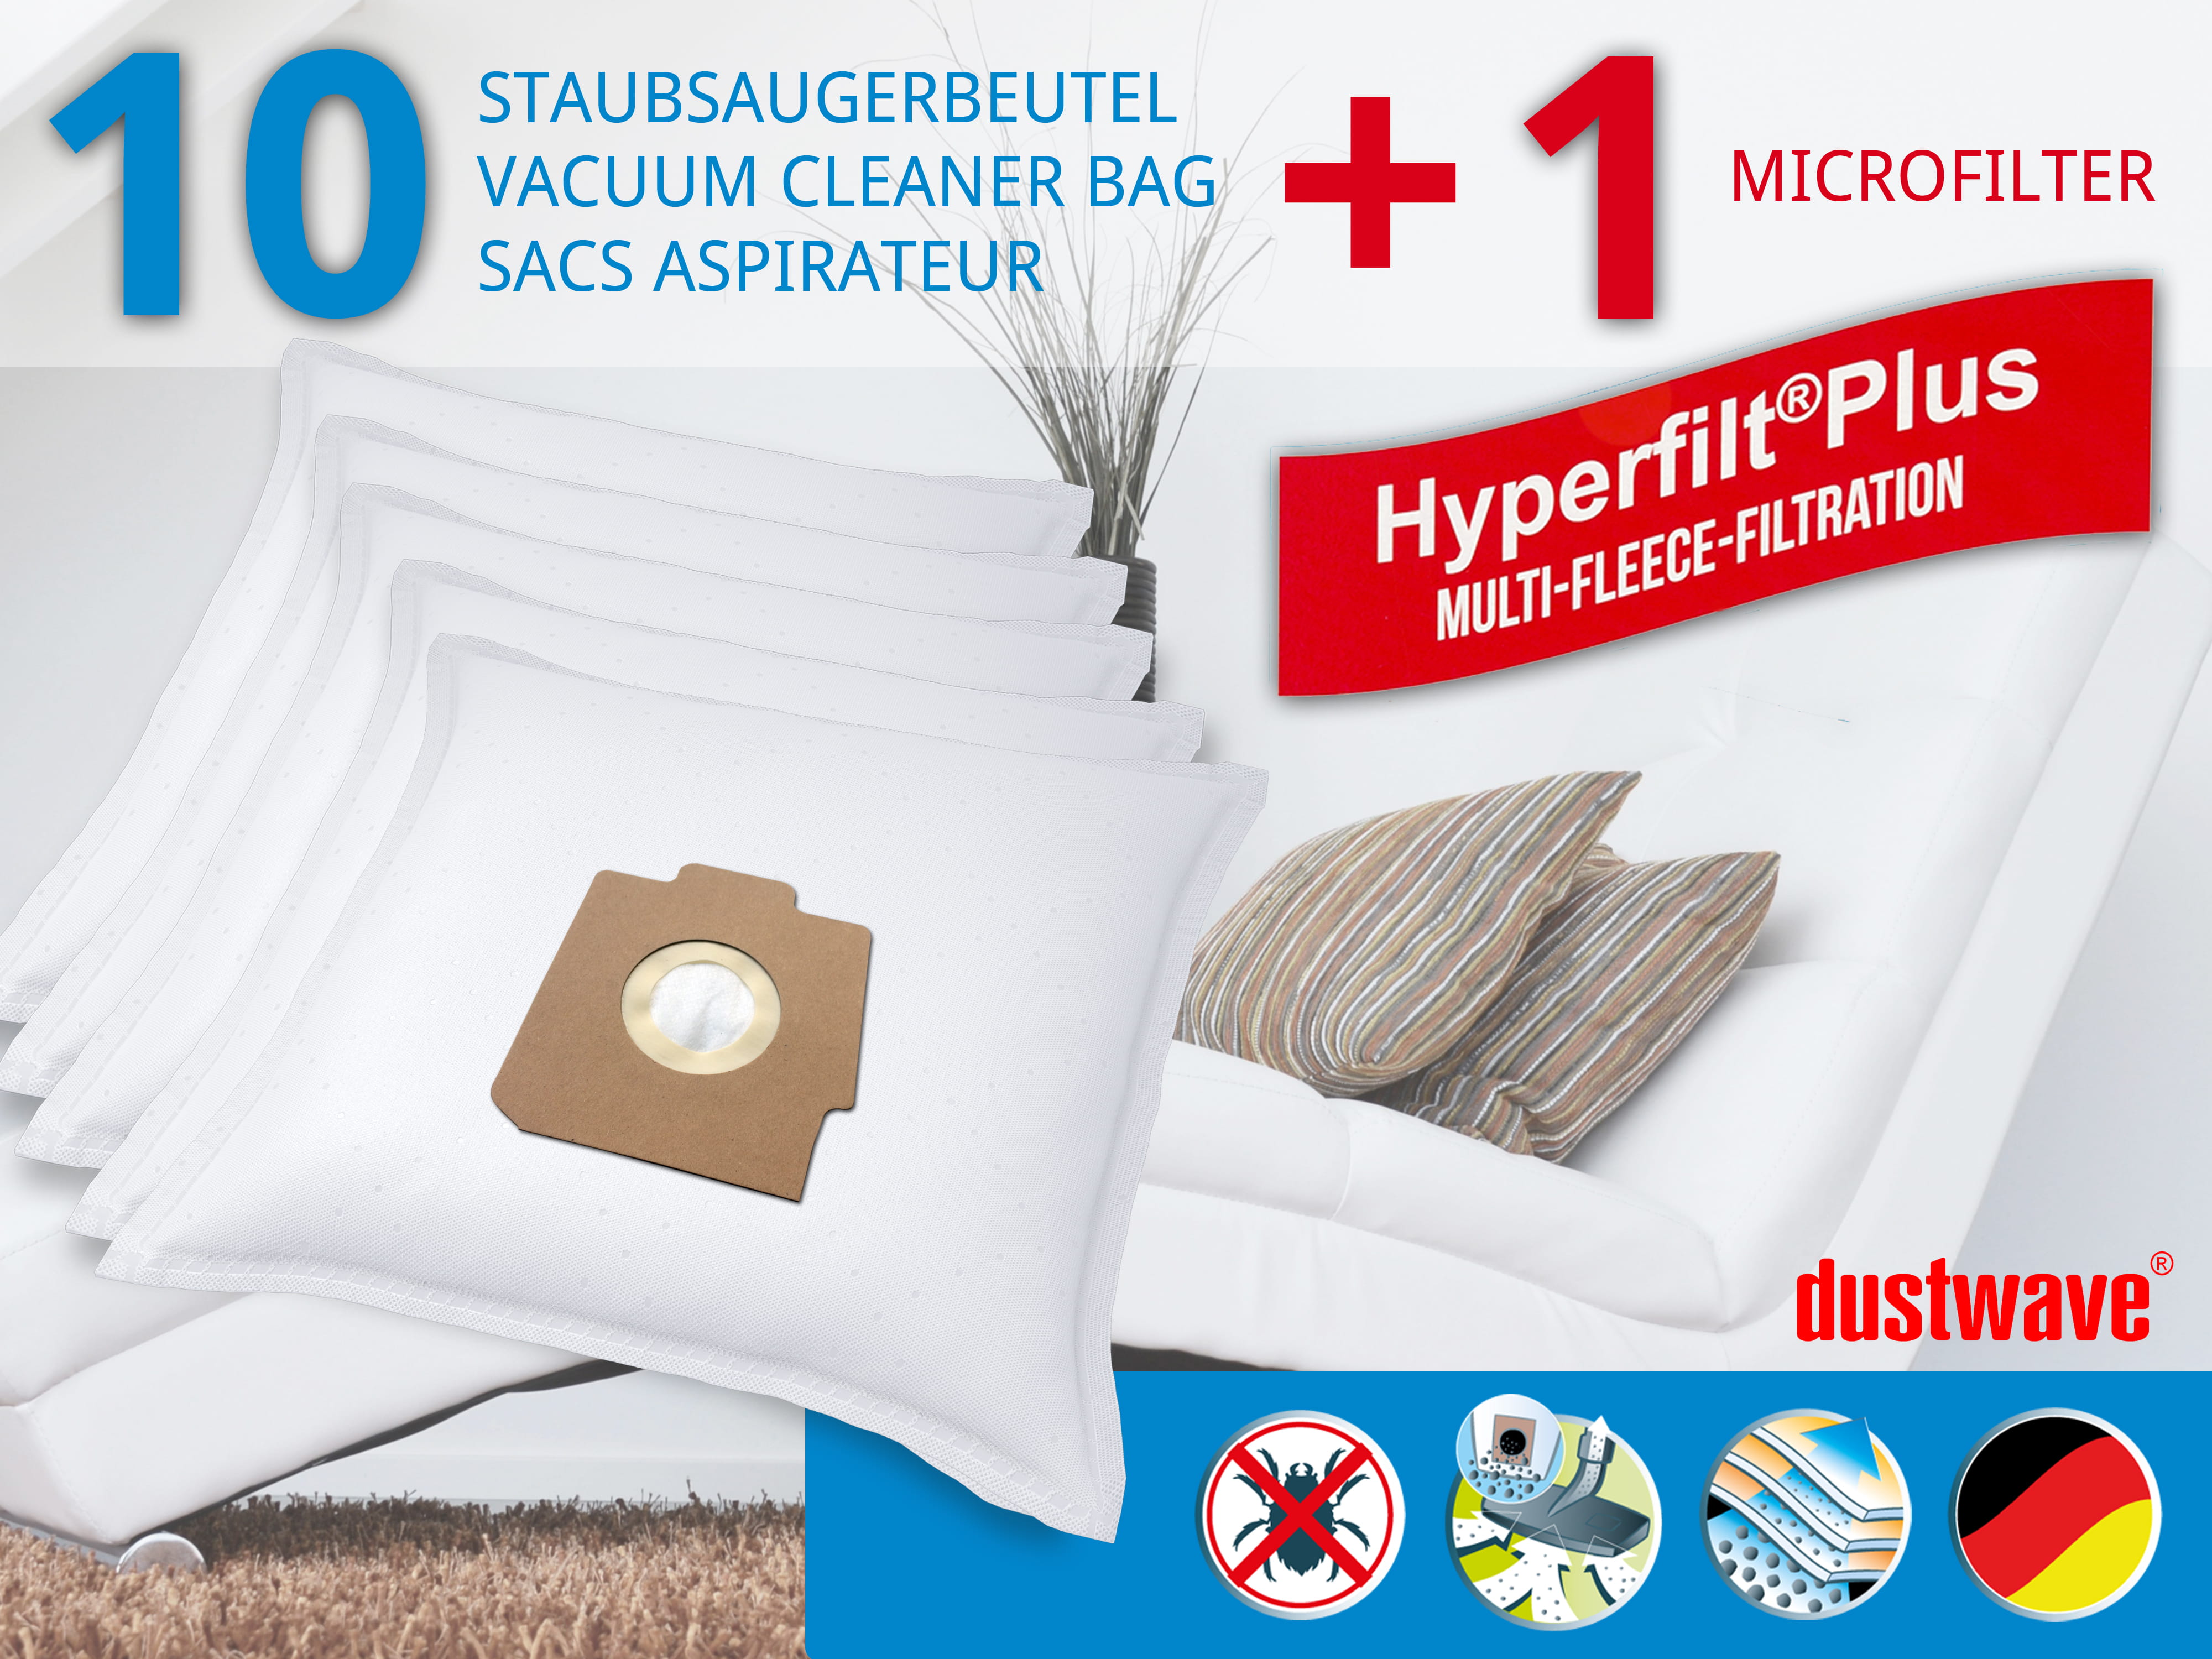 Dustwave® 10 Staubsaugerbeutel für Hoover SC210... / TRSC210 - hocheffizient, mehrlagiges Mikrovlies mit Hygieneverschluss - Made in Germany